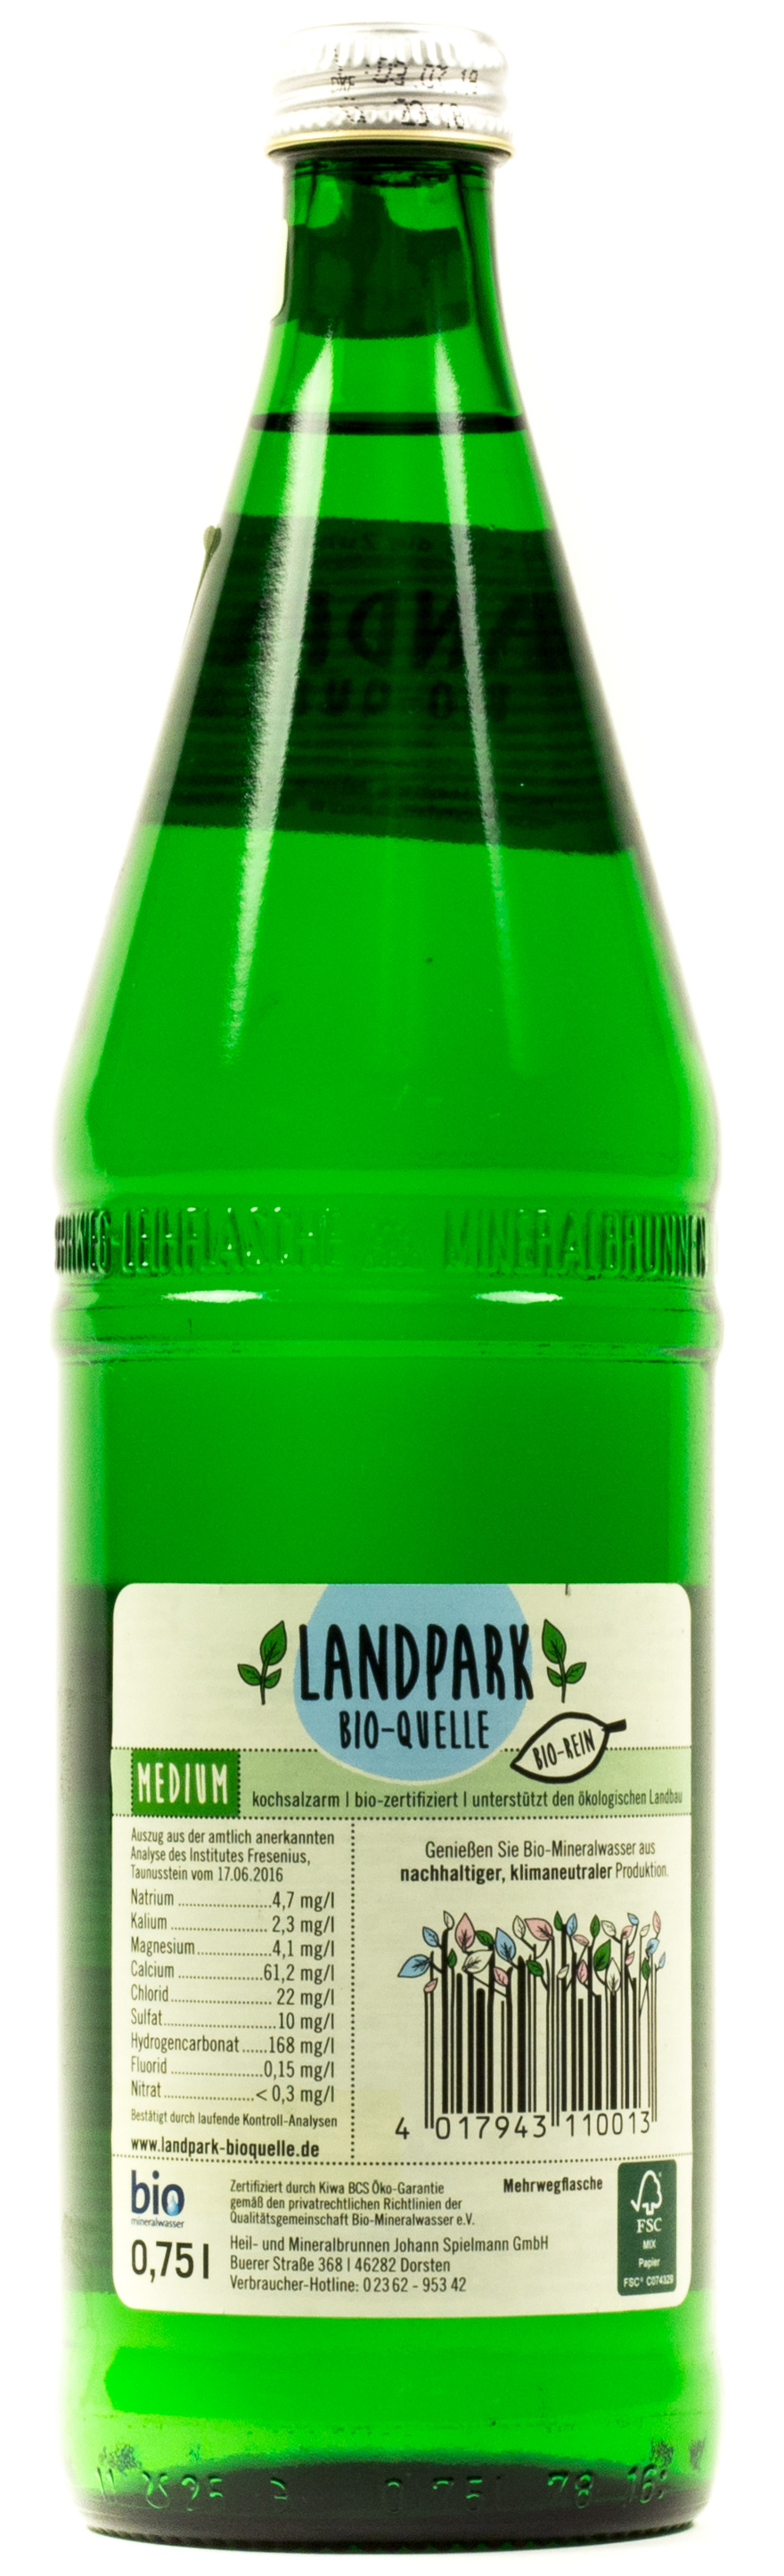 Landpark Mineralwasser bioquelle Medium Kasten 12 x 0,75 l Glas Mehrweg